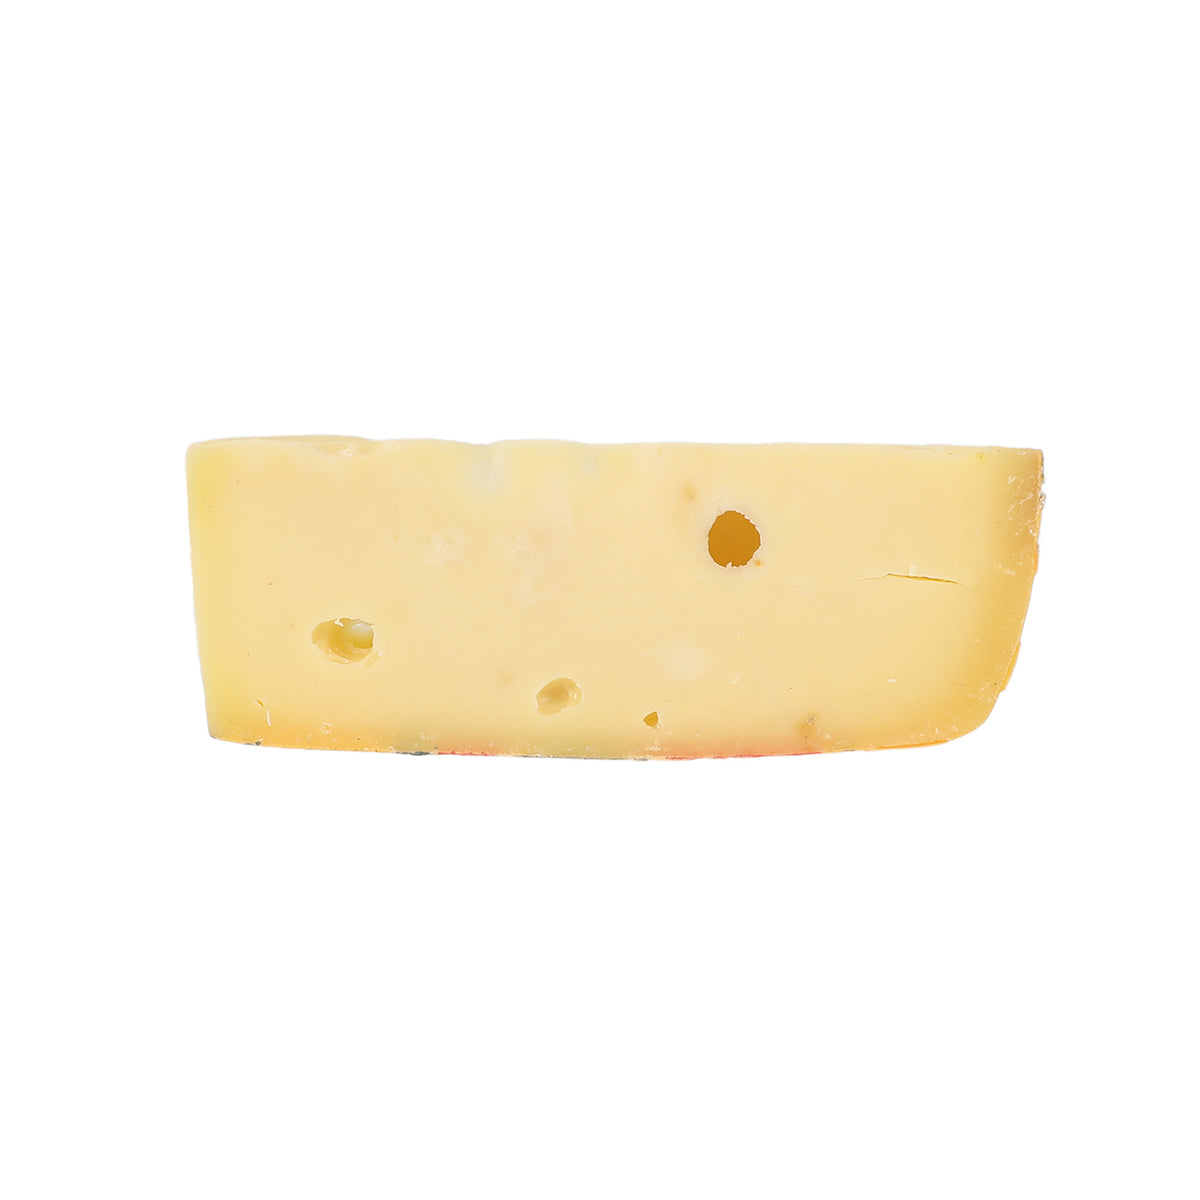 Murray'S Cheese Jarlsberg Cheese